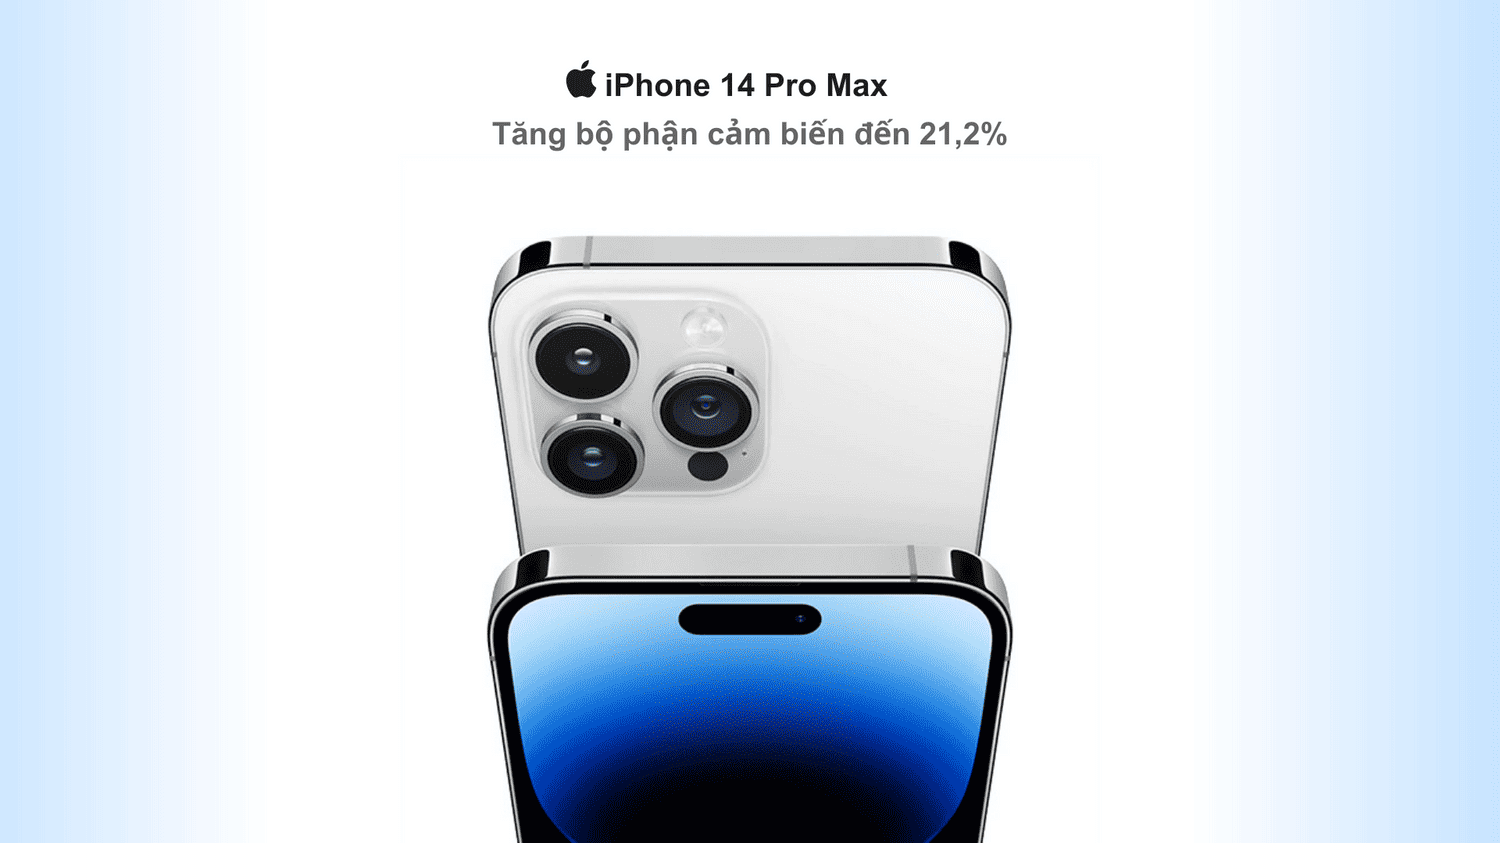 Camera sau của iPhone 14 Pro Max sẽ có diện tích lớn hơn 21,2% so với camera của iPhone 13 Pro Max để có thể chứa cảm biến ống kính rộng hơn